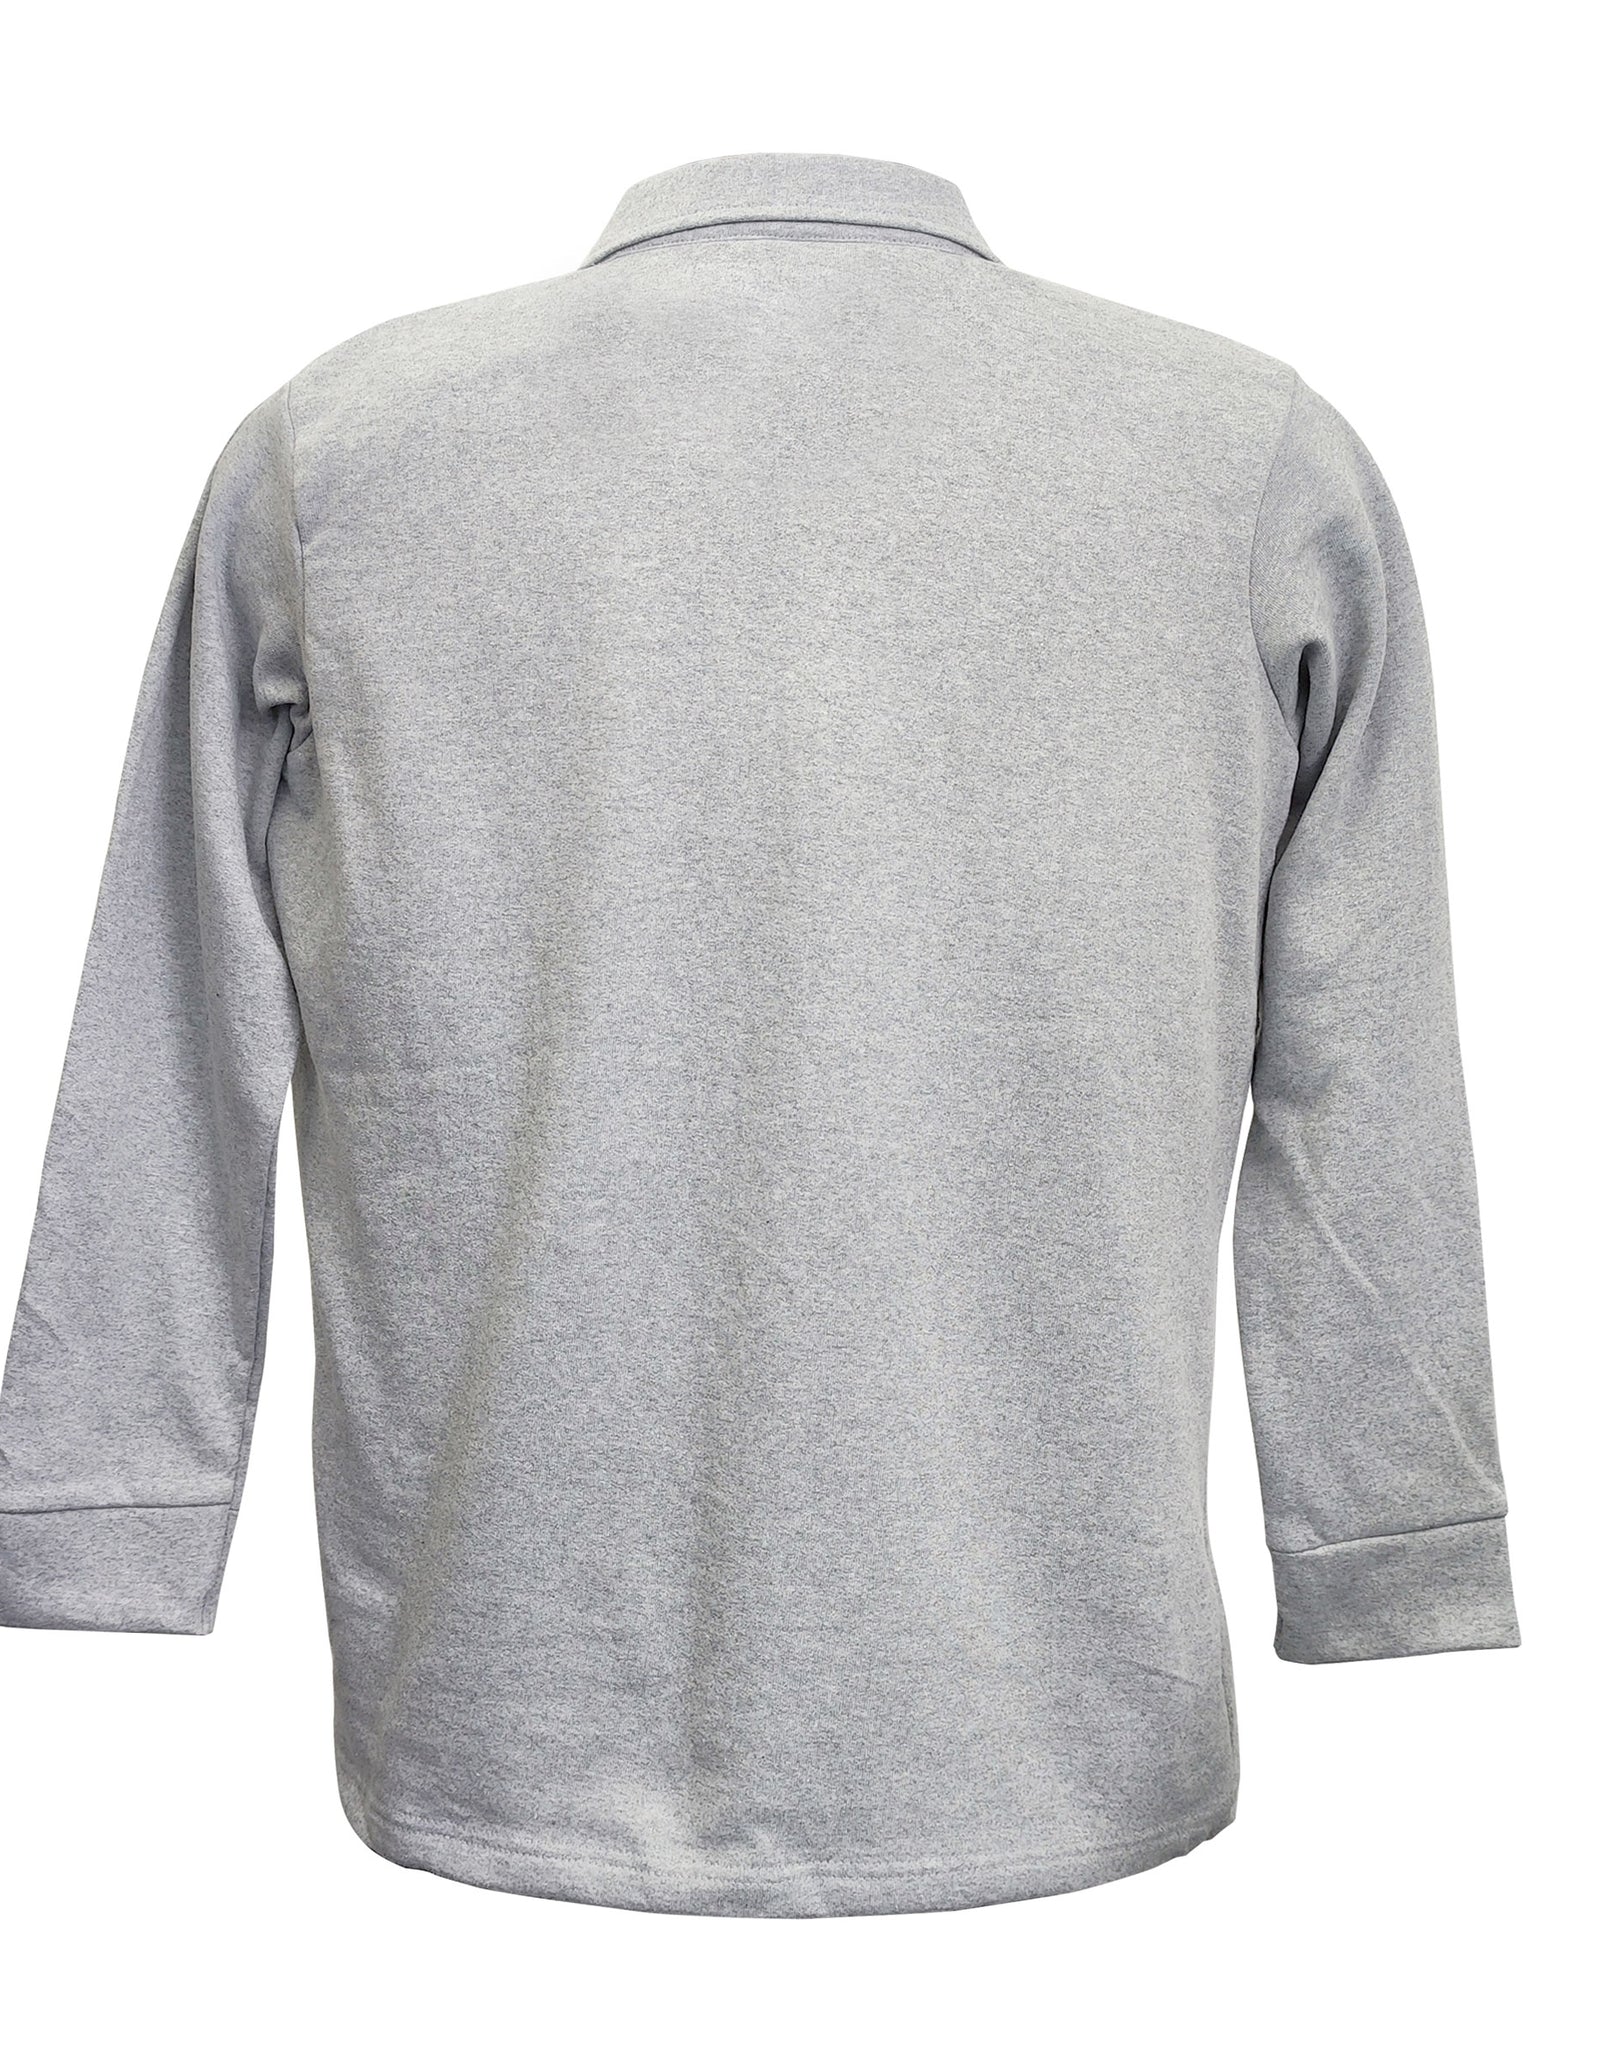 Sweatshirt for Men  - Grey Melange